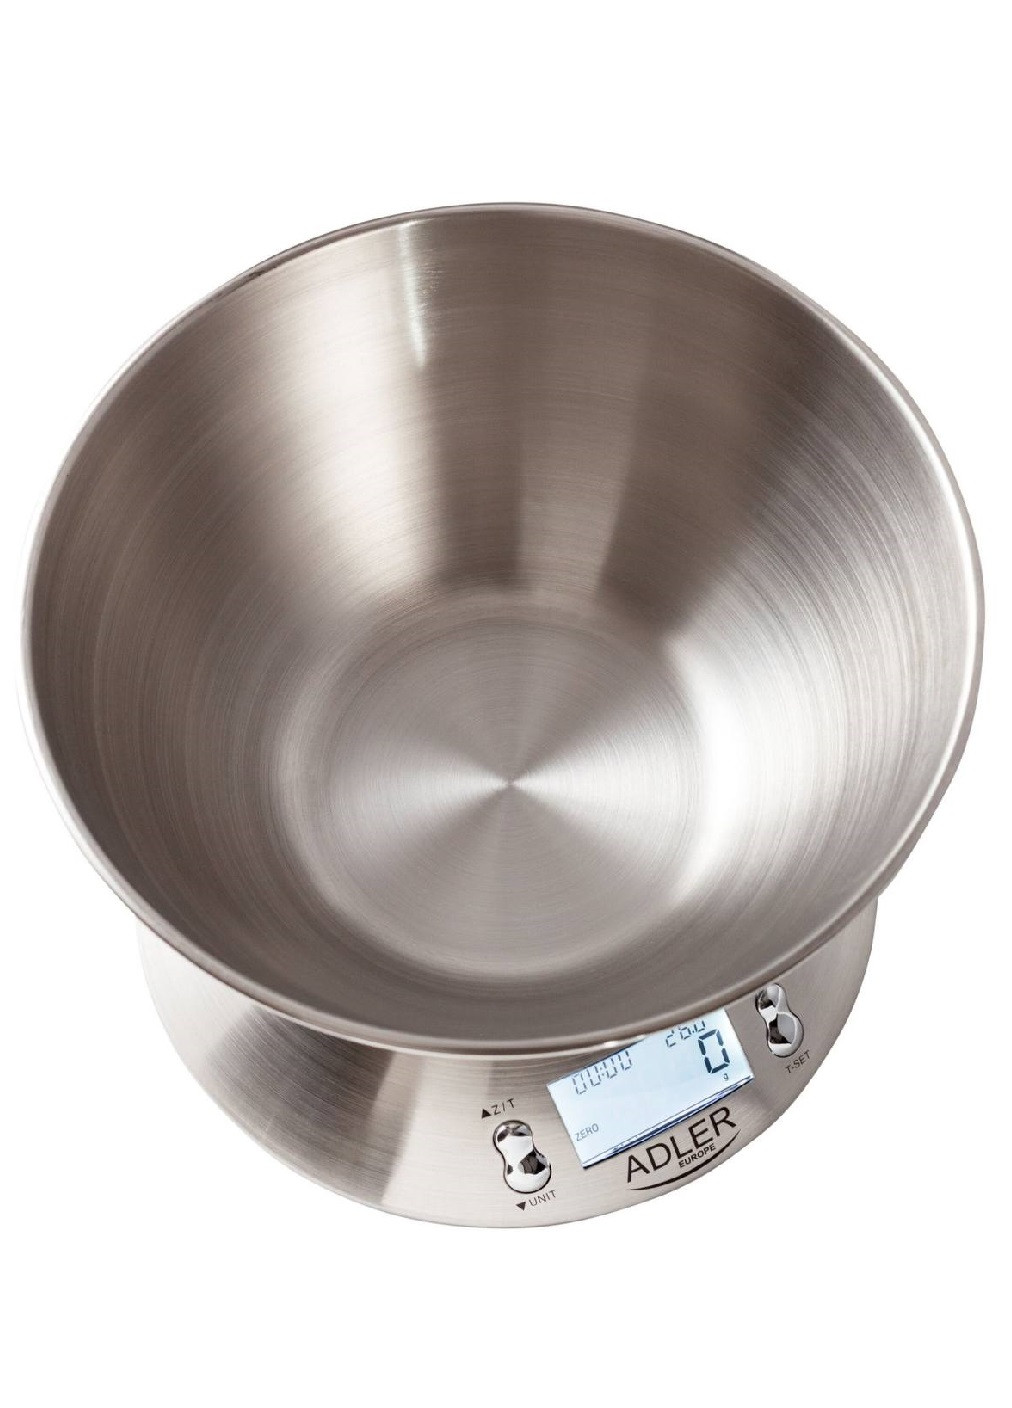 Ваги кухонні електронні металеві з дисплеєм термометром індикатором компактні з чашею до 5 кг (474530-Prob) Unbranded (258678438)